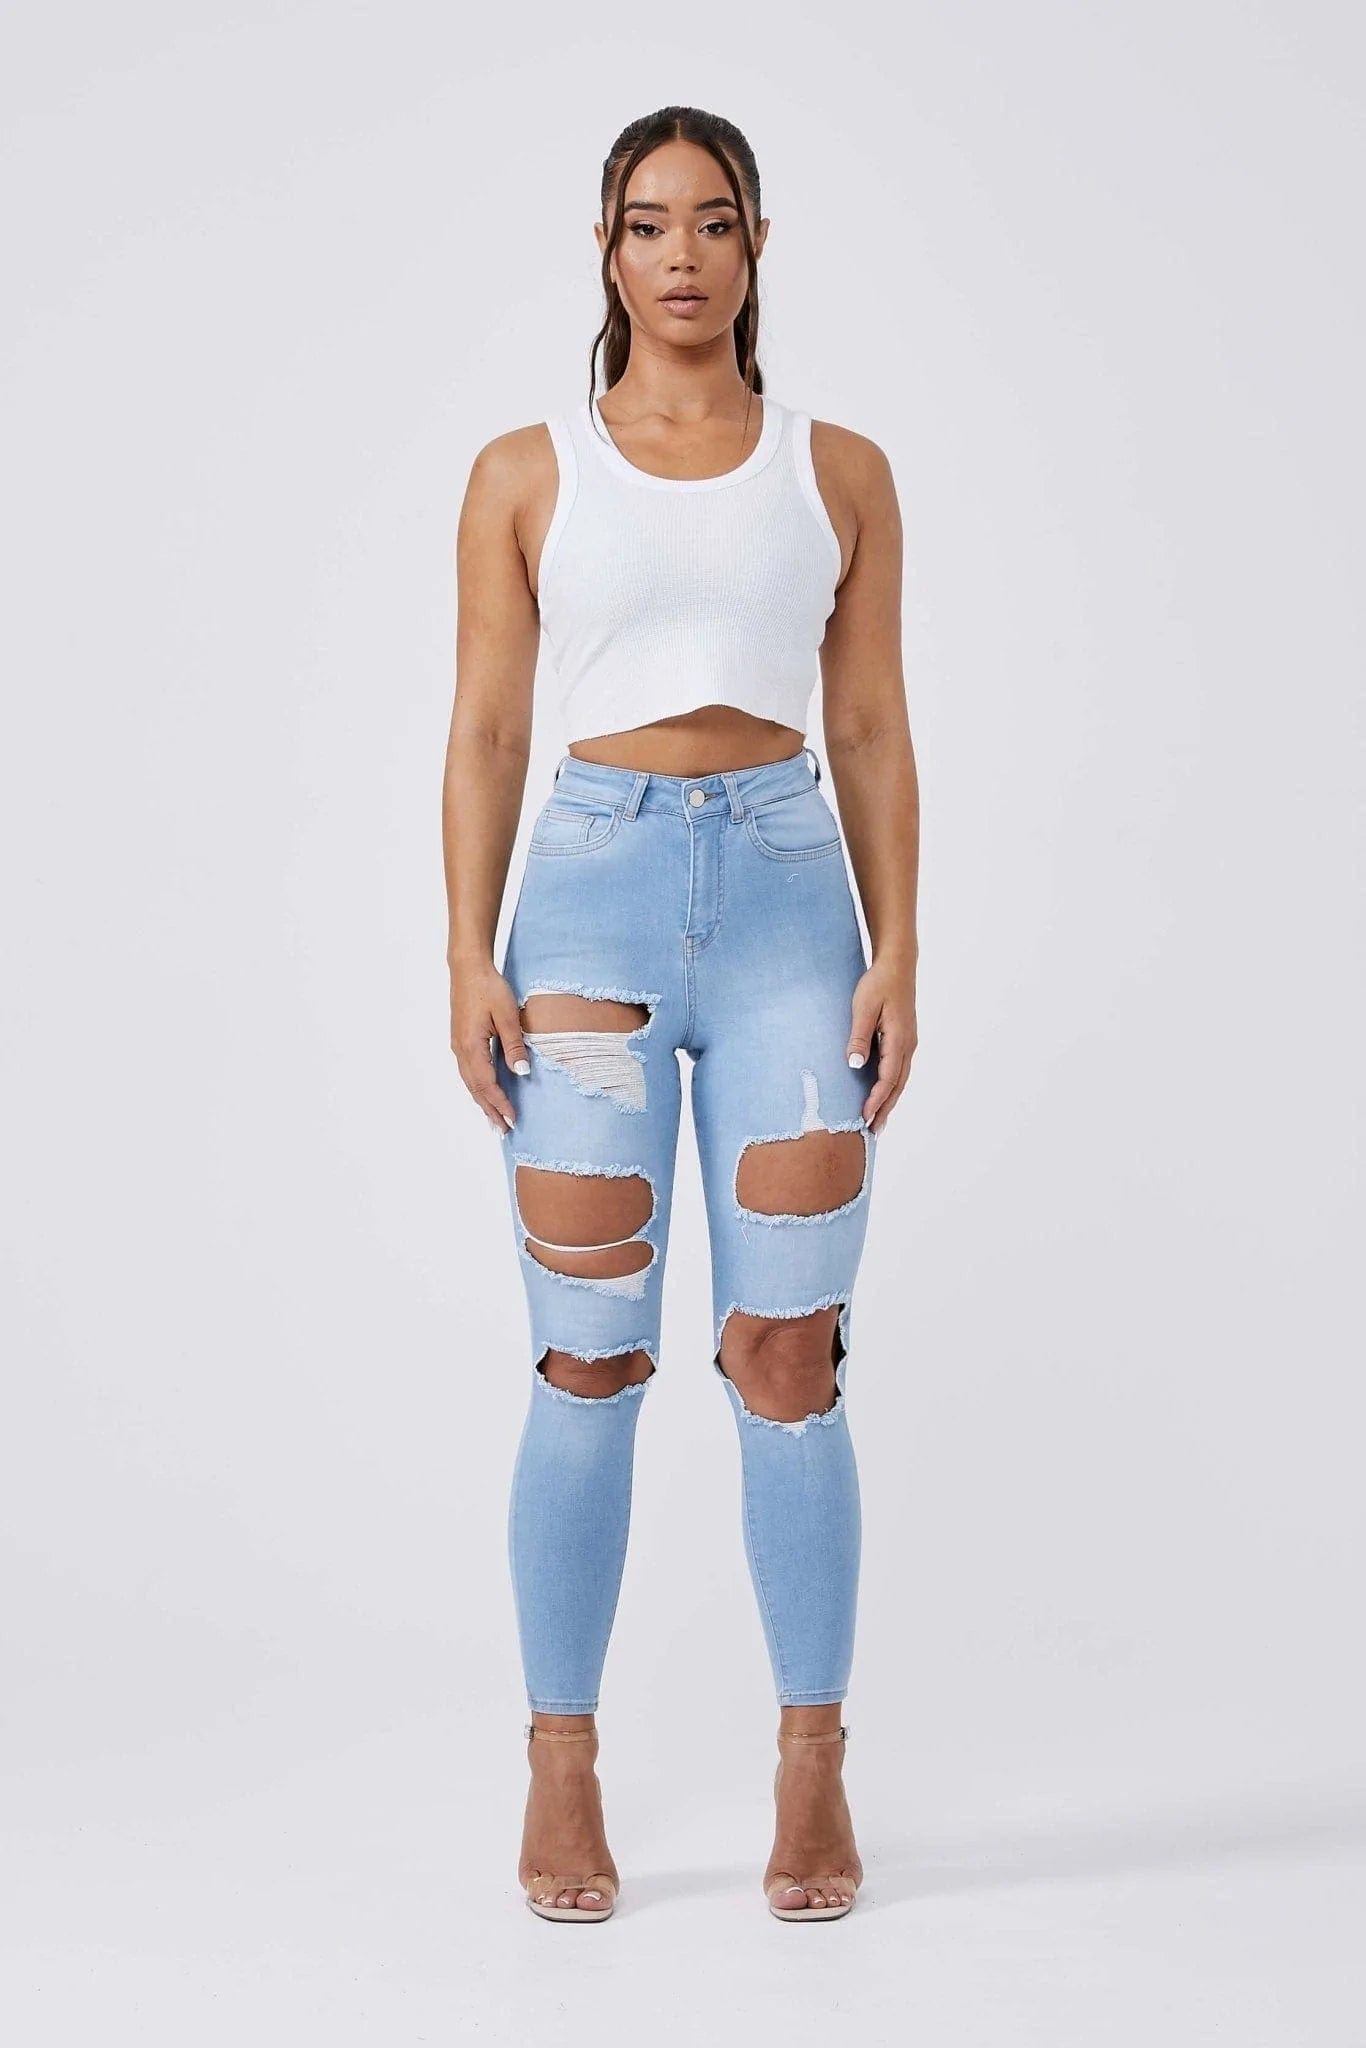 http://www.legendlondon.co/cdn/shop/products/legend-london-women-s-jeans-skinny-jeans-multi-ripped-light-blue-32686268121285.webp?v=1678136008